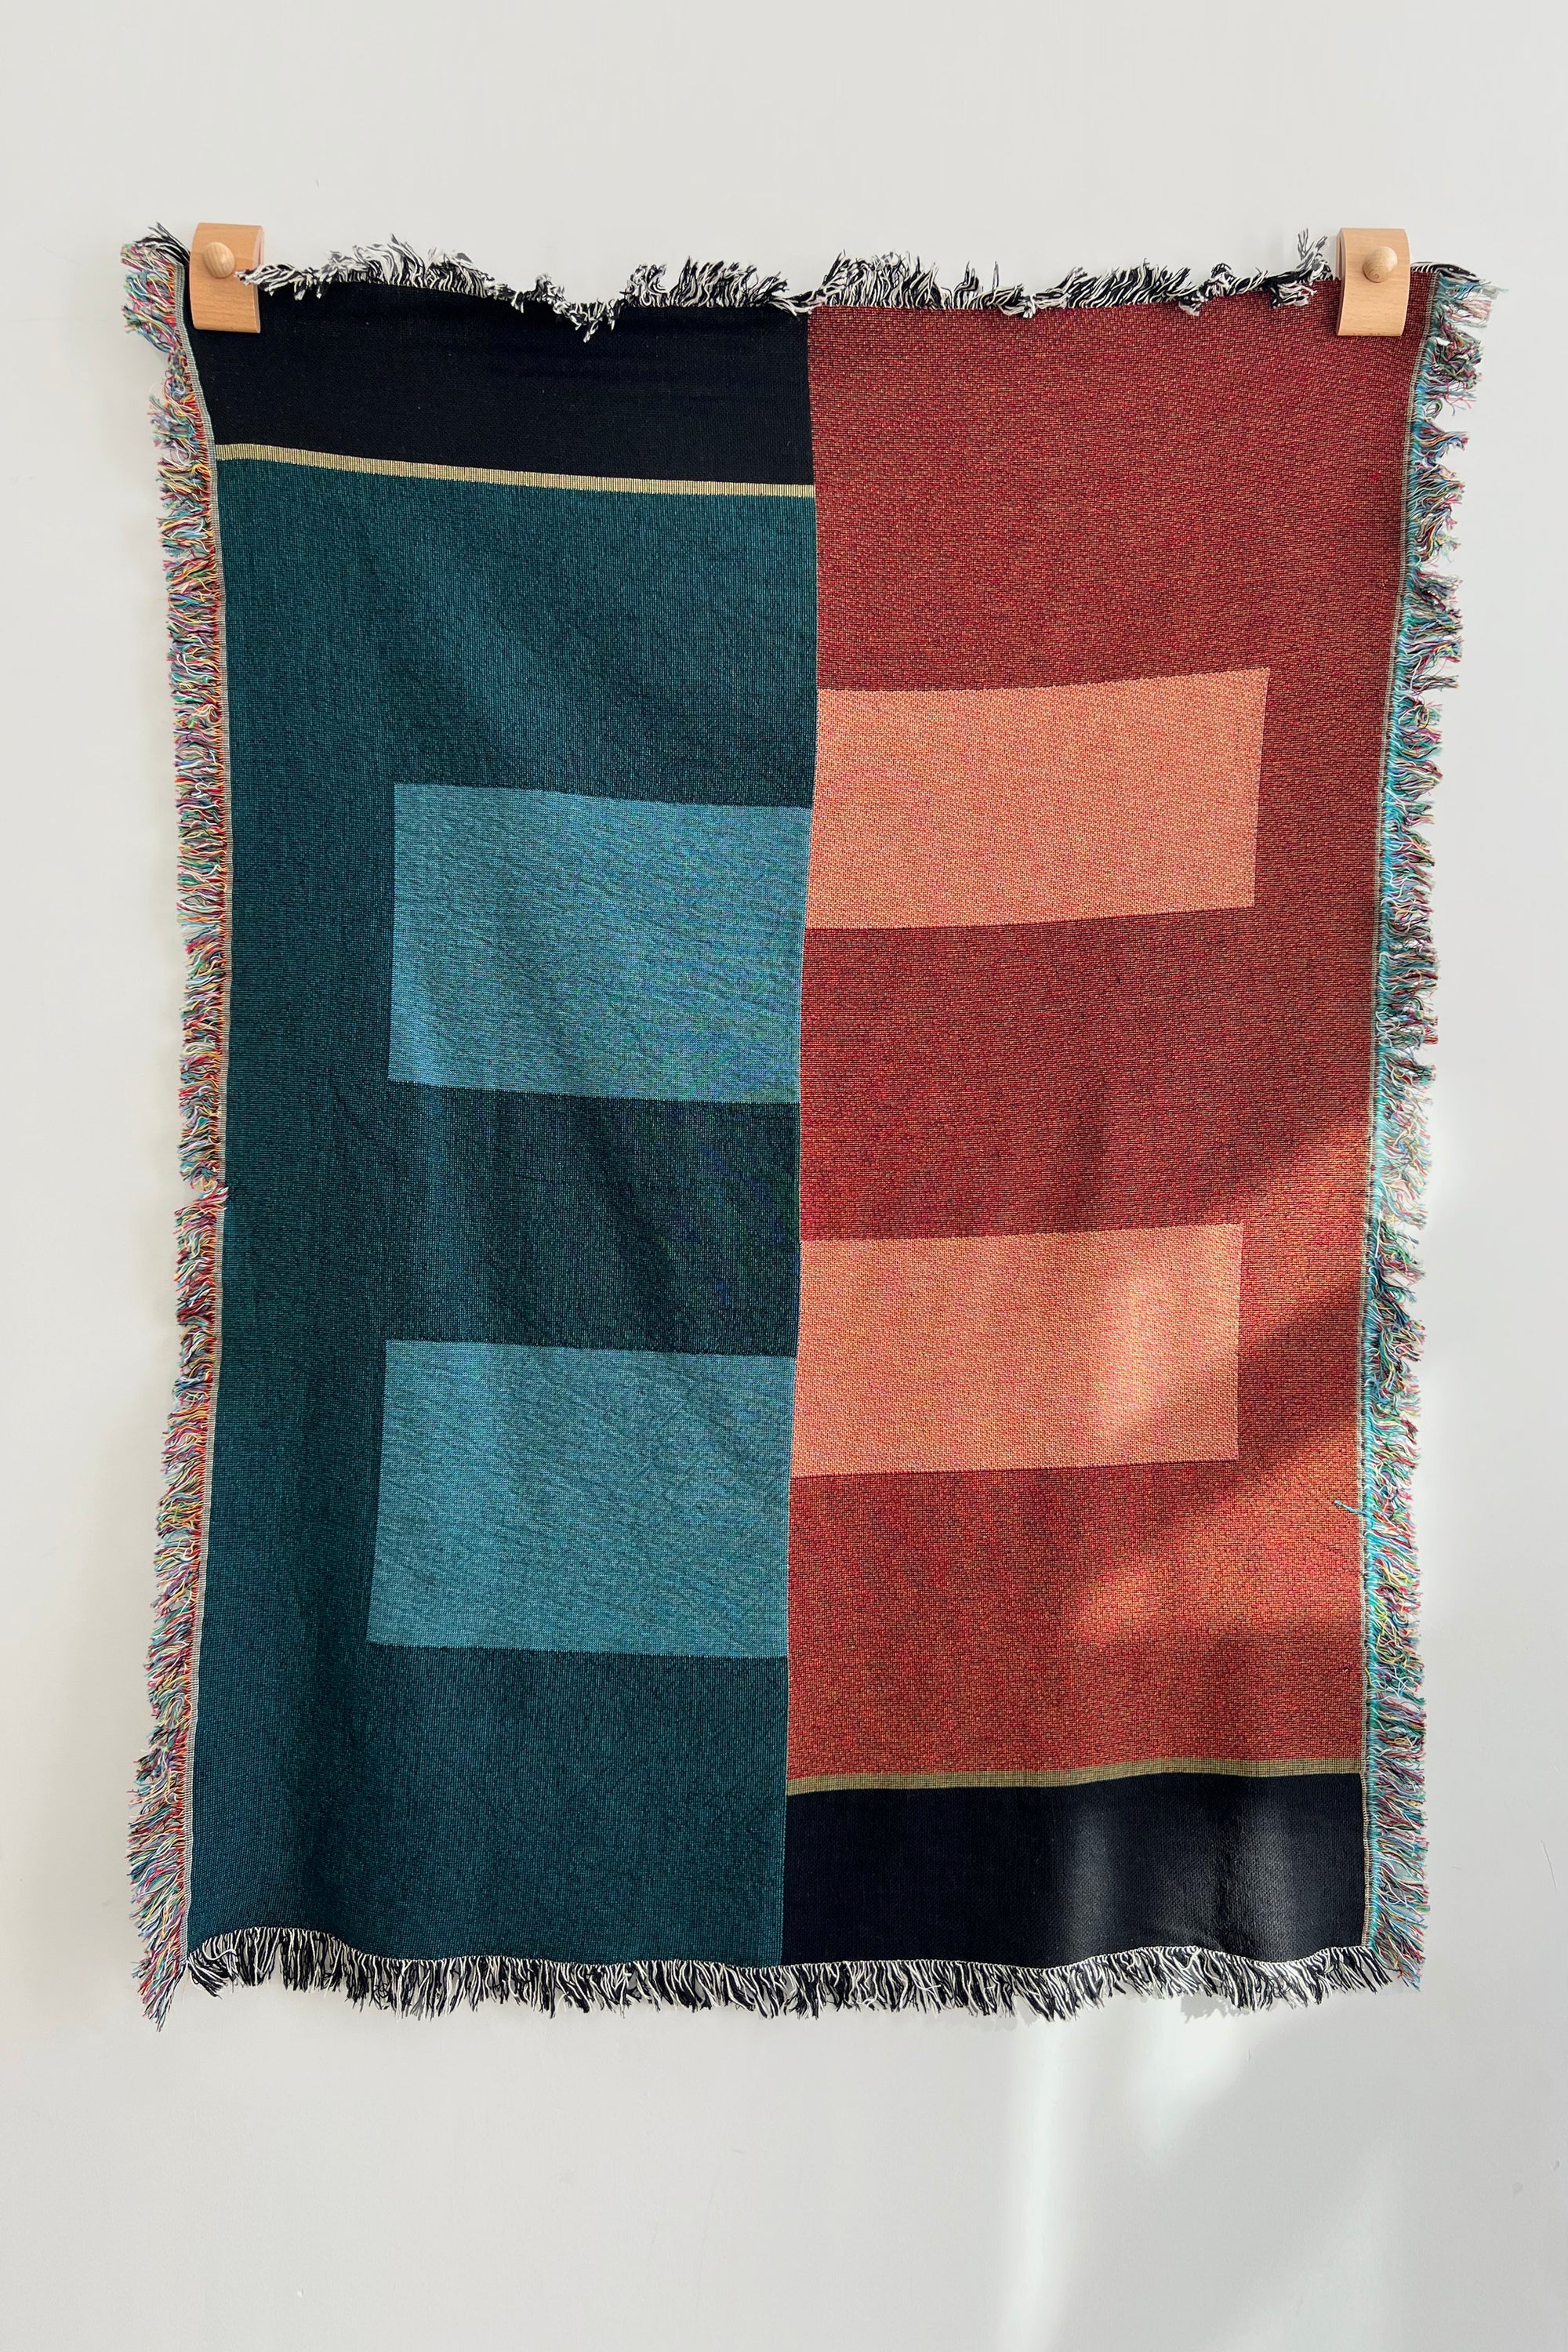 split figure woven blanket